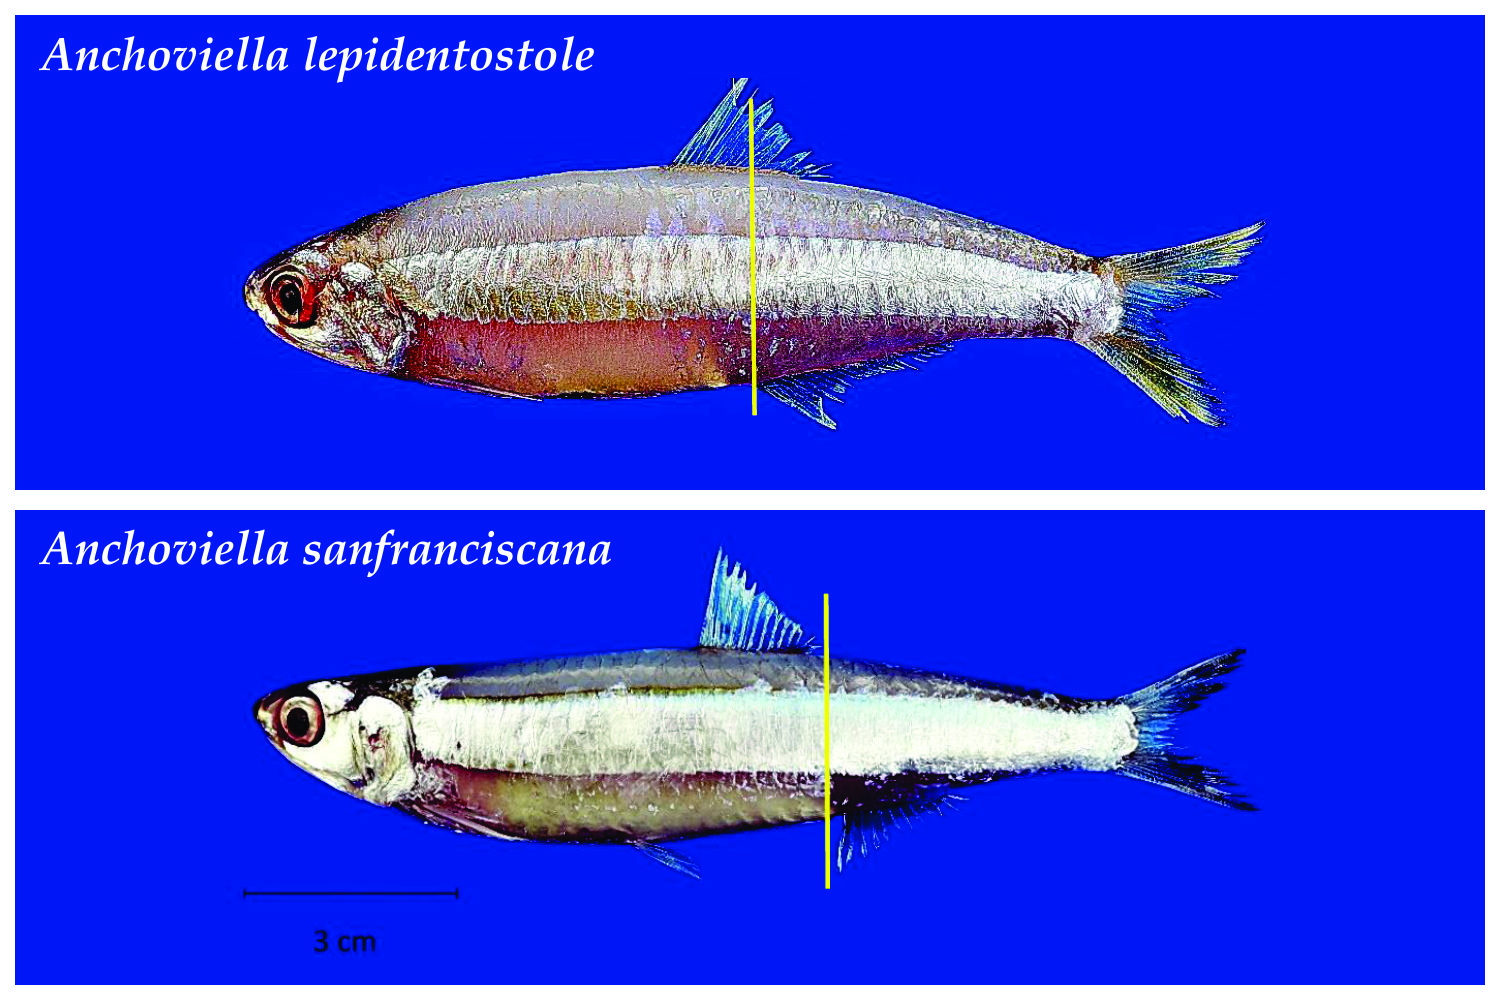 Distância entre as nadadeiras dorsal e anal diferencia a pilombeta-pau da pilombeta-branca (Anchoviella lepidentostole) - Fonte: trabalho dos autores